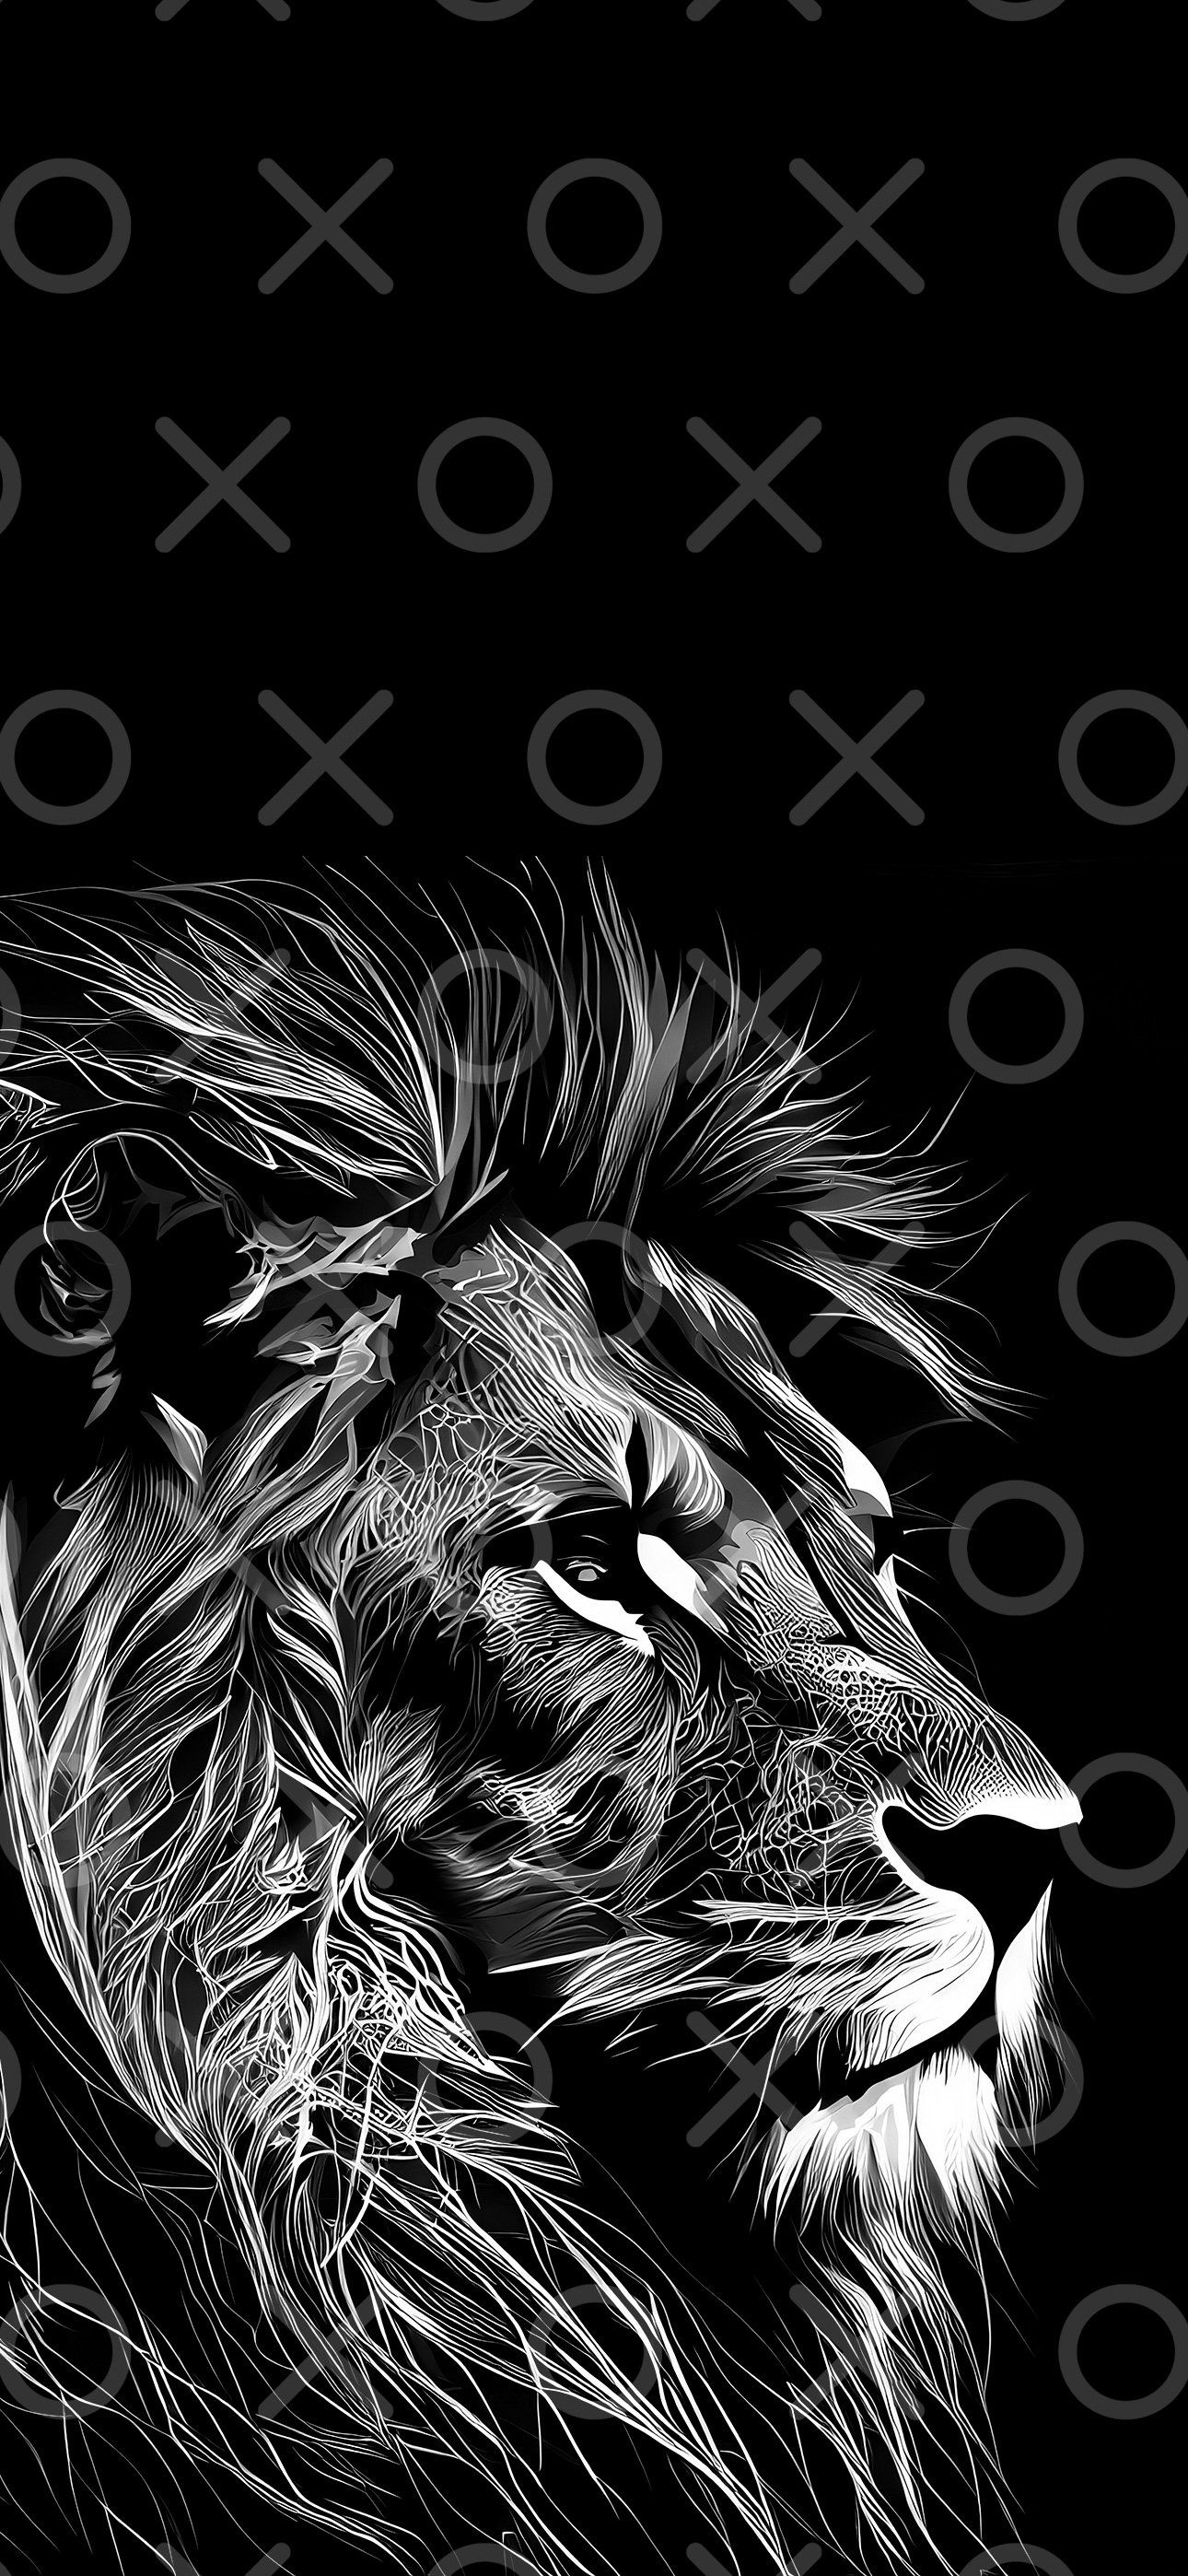  Löwen Hintergrundbild 1290x2796. IPhone Wallpaper Löwe Kunst iOS Tier schwarz & weiß